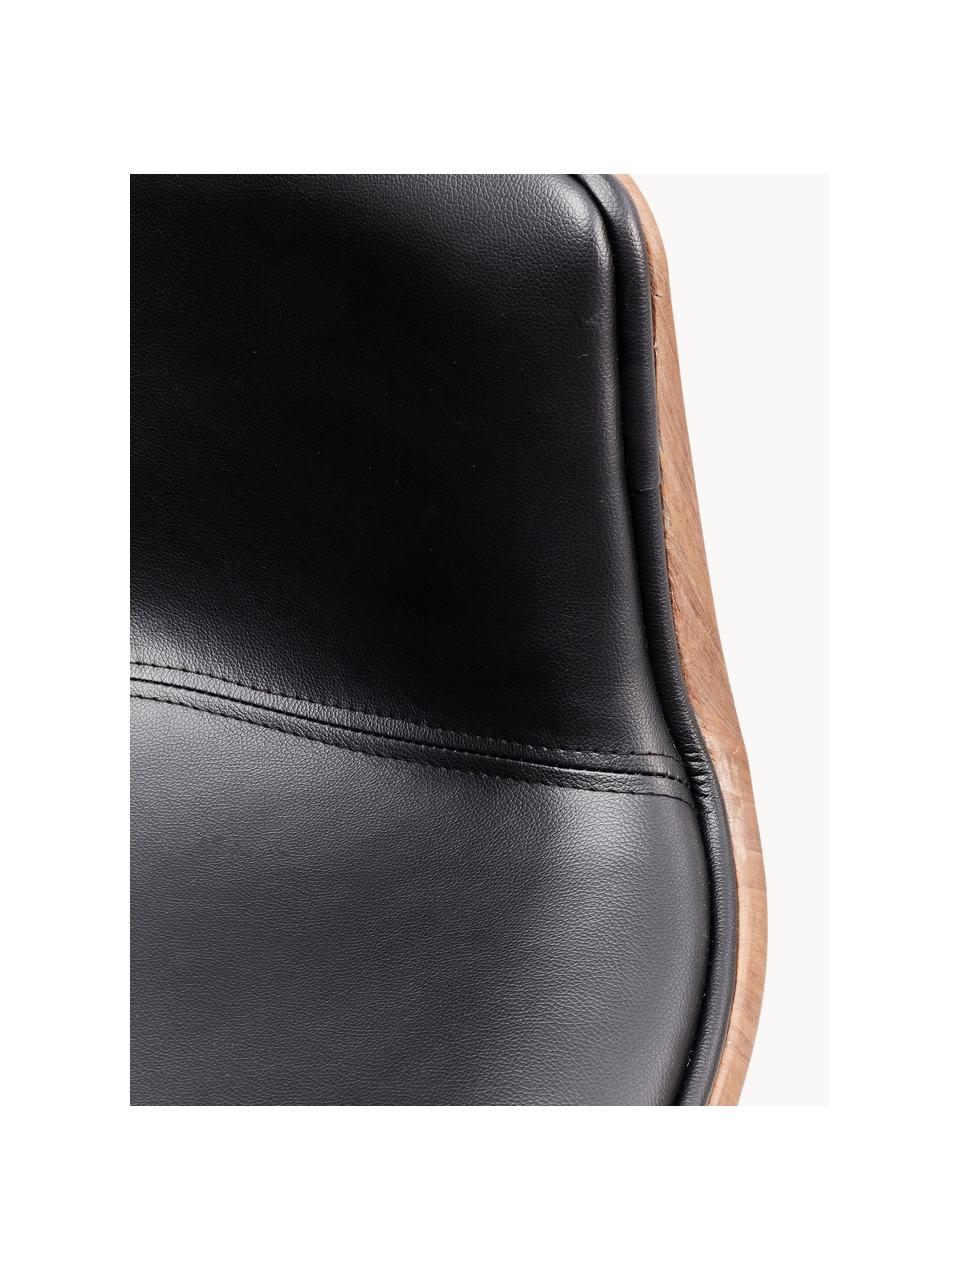 Chaise pivotante design rétro Club, Cuir synthétique noir, larg. 62 x prof. 61 cm